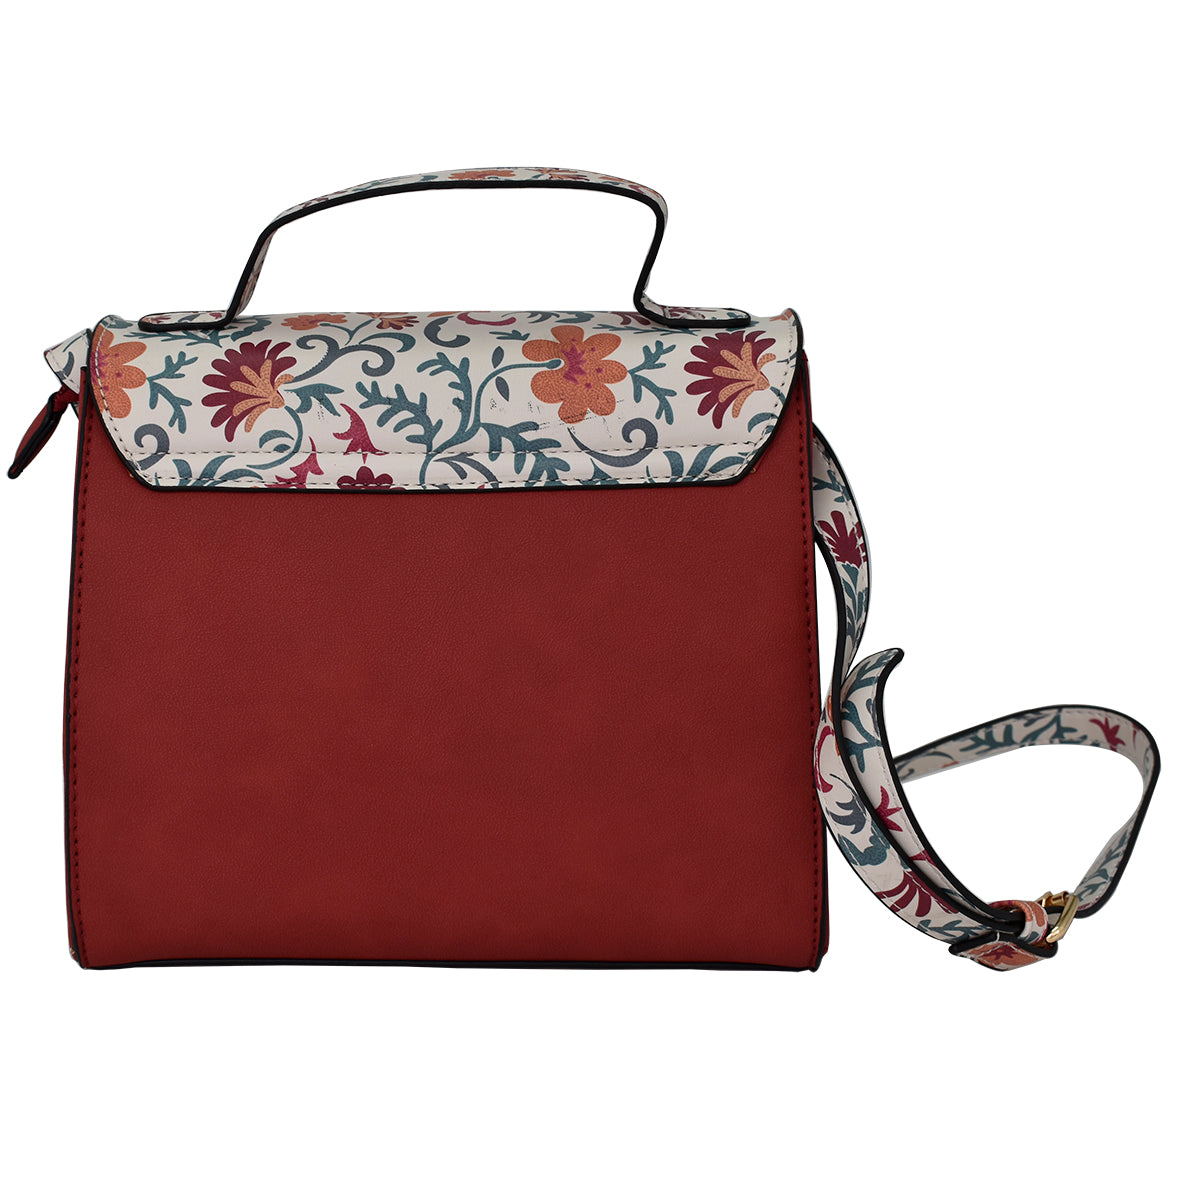 Bolsa [Lulu] tipo  crossbody con diseño de flores color rojo